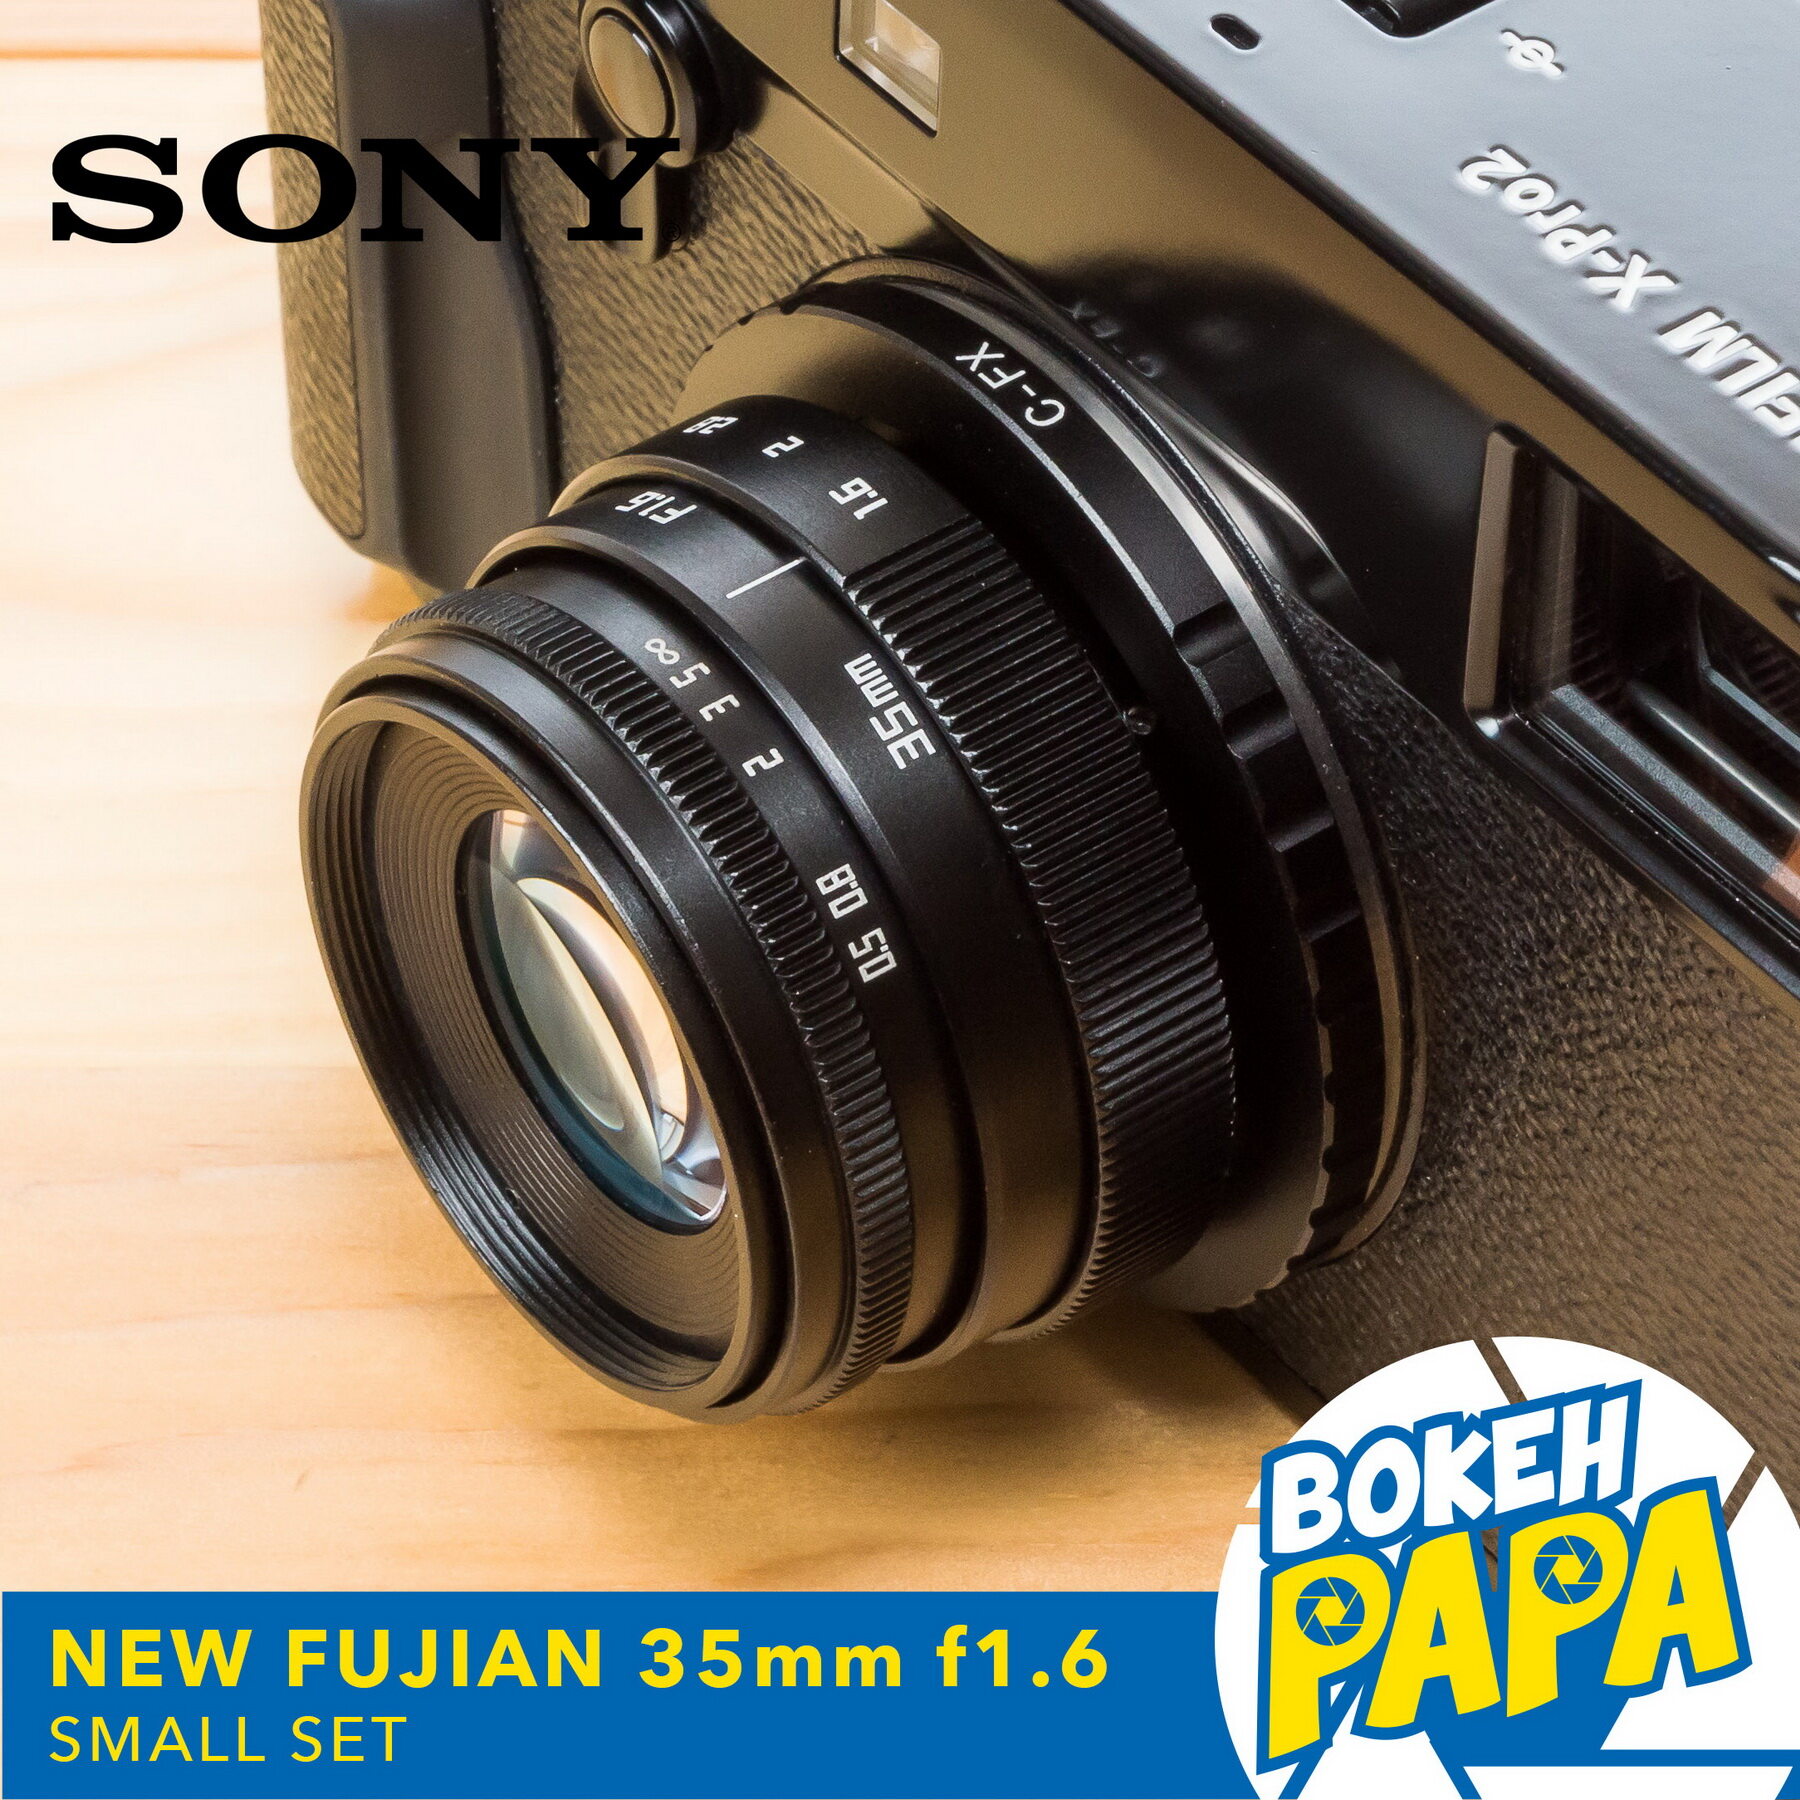 New Fujian 35mm F1.6 เลนส์หน้าชัดหลังเบลอ สำหรับใส่กล้อง Sony Mirrorless ได้ทุกรุ่น ( เลนส์มือหมุน ). 